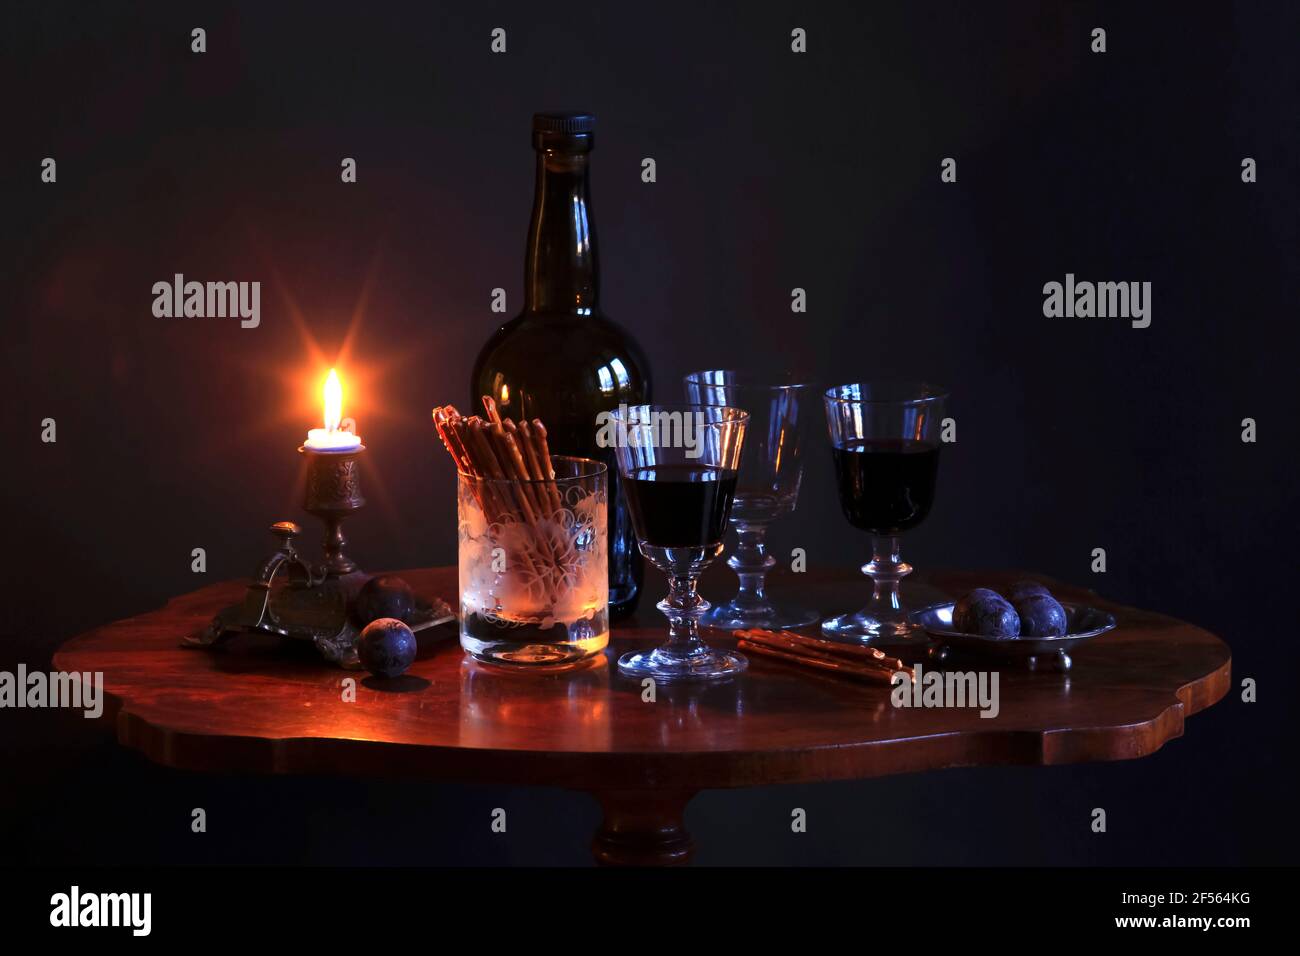 Studio photo d'une bouteille de vin rouge, de trois verres de vin, de prunes, de bretzels salés et d'une bougie sur une petite table basse Banque D'Images